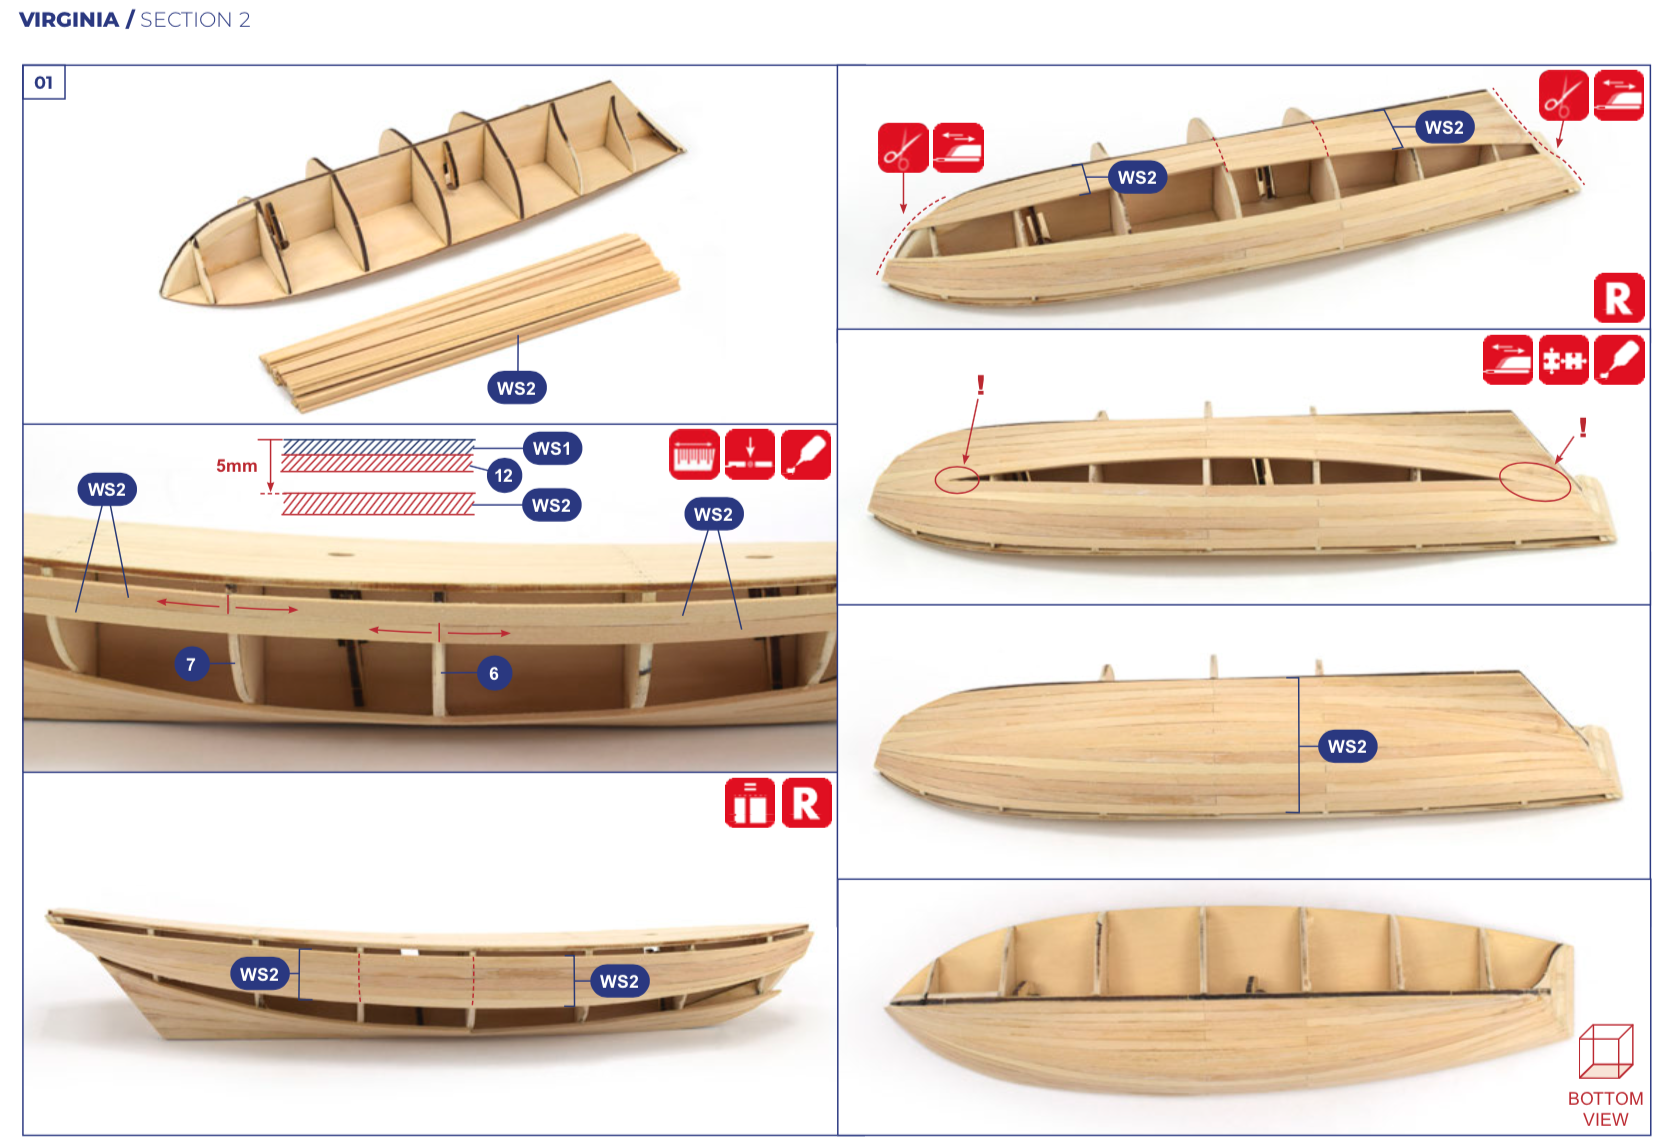 Artesanía Latina - Kit de modelo de barco de madera - Goleta americana,  Virginia - Modelo 22115, escala 1:41 - Modelos para montar - Nivel